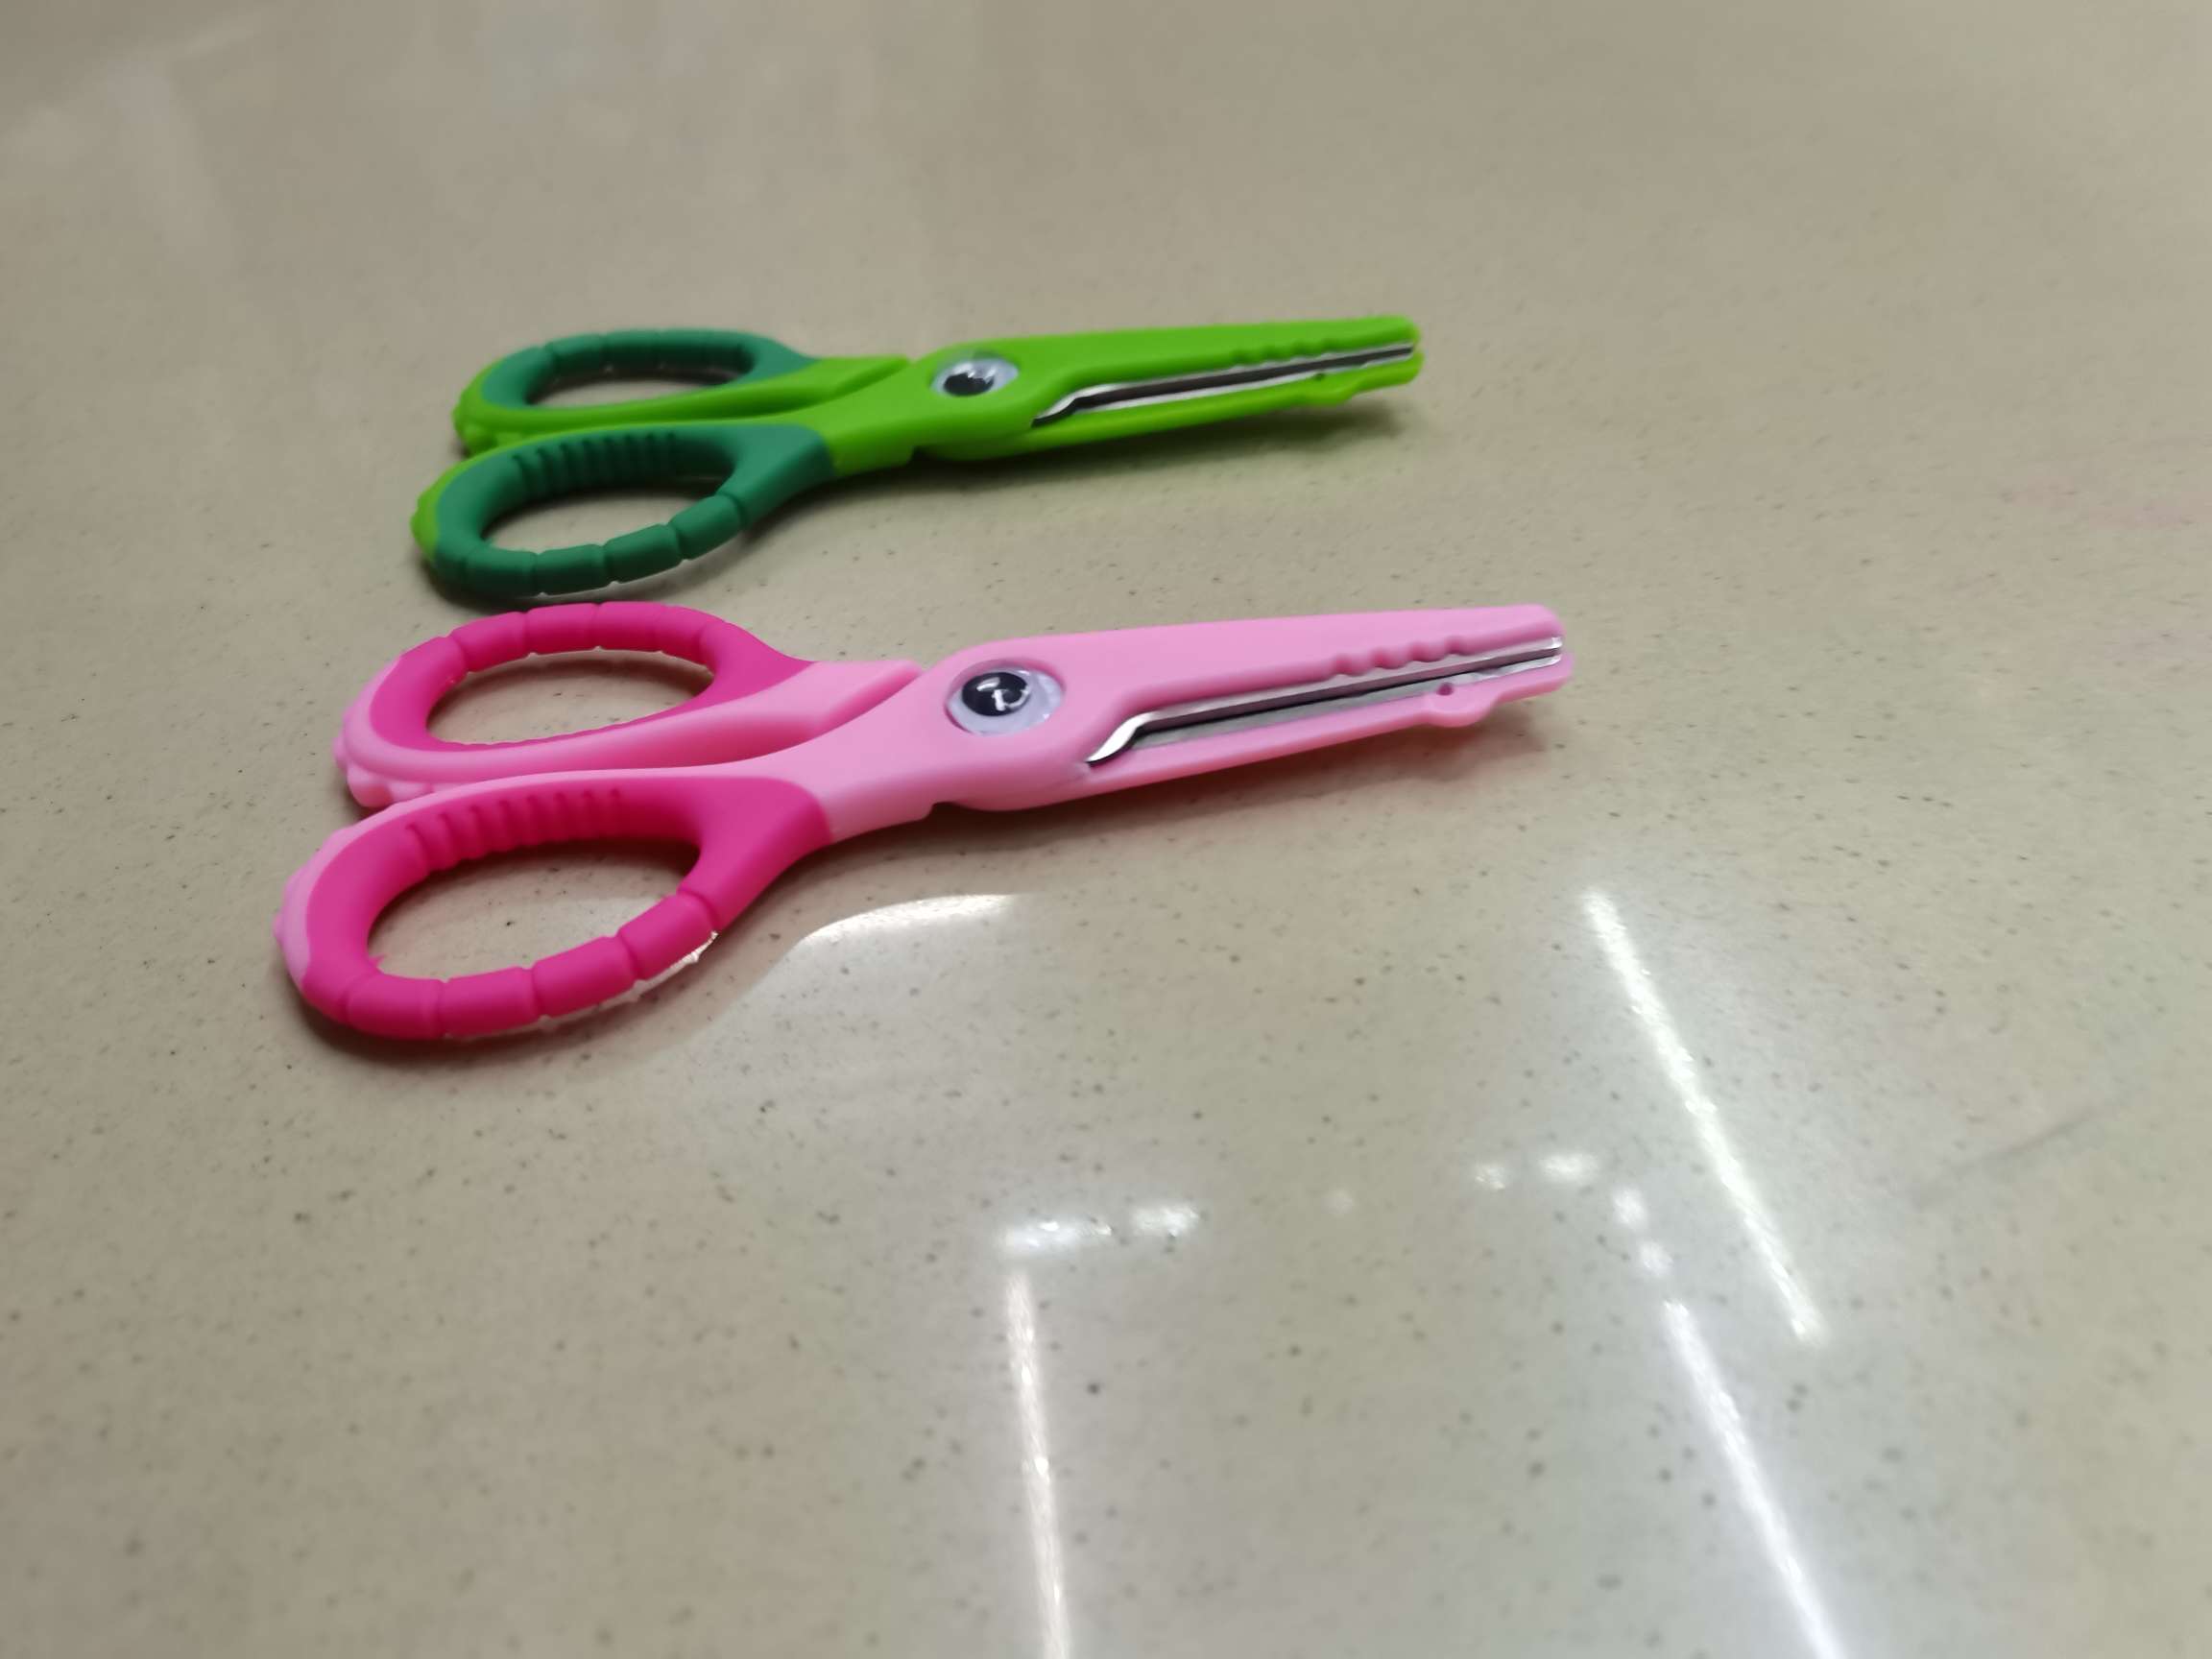 学生剪刀 文具剪刀 办公文教 百货剪刀 刀具剪具 刀具工具 儿童剪刀 